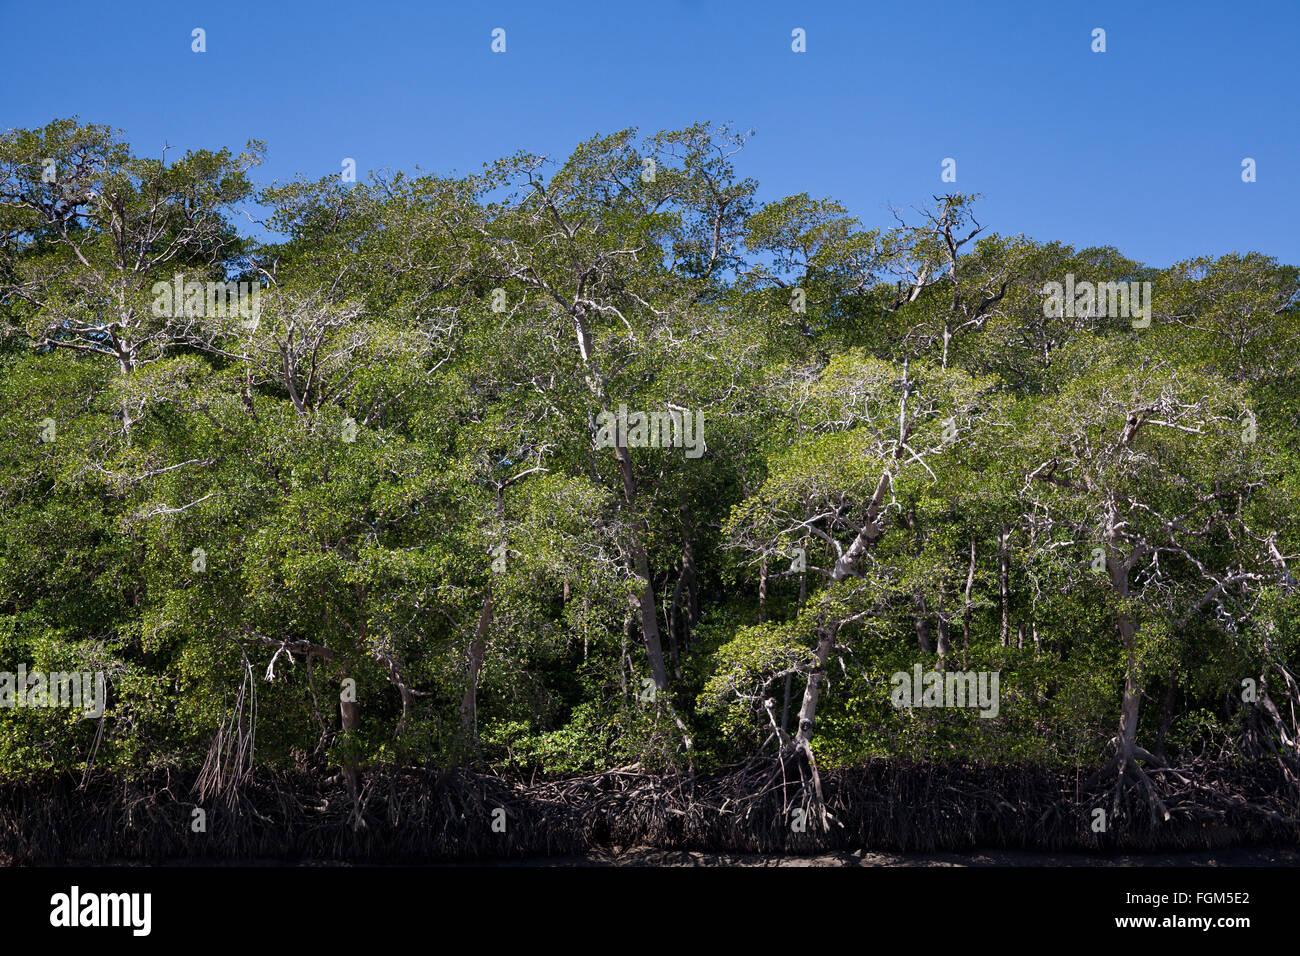 Mangrovenwald in der Nähe der Mündung des Rio Grande, Pazifikküste, Provinz Cocle, Republik Panama. Stockfoto